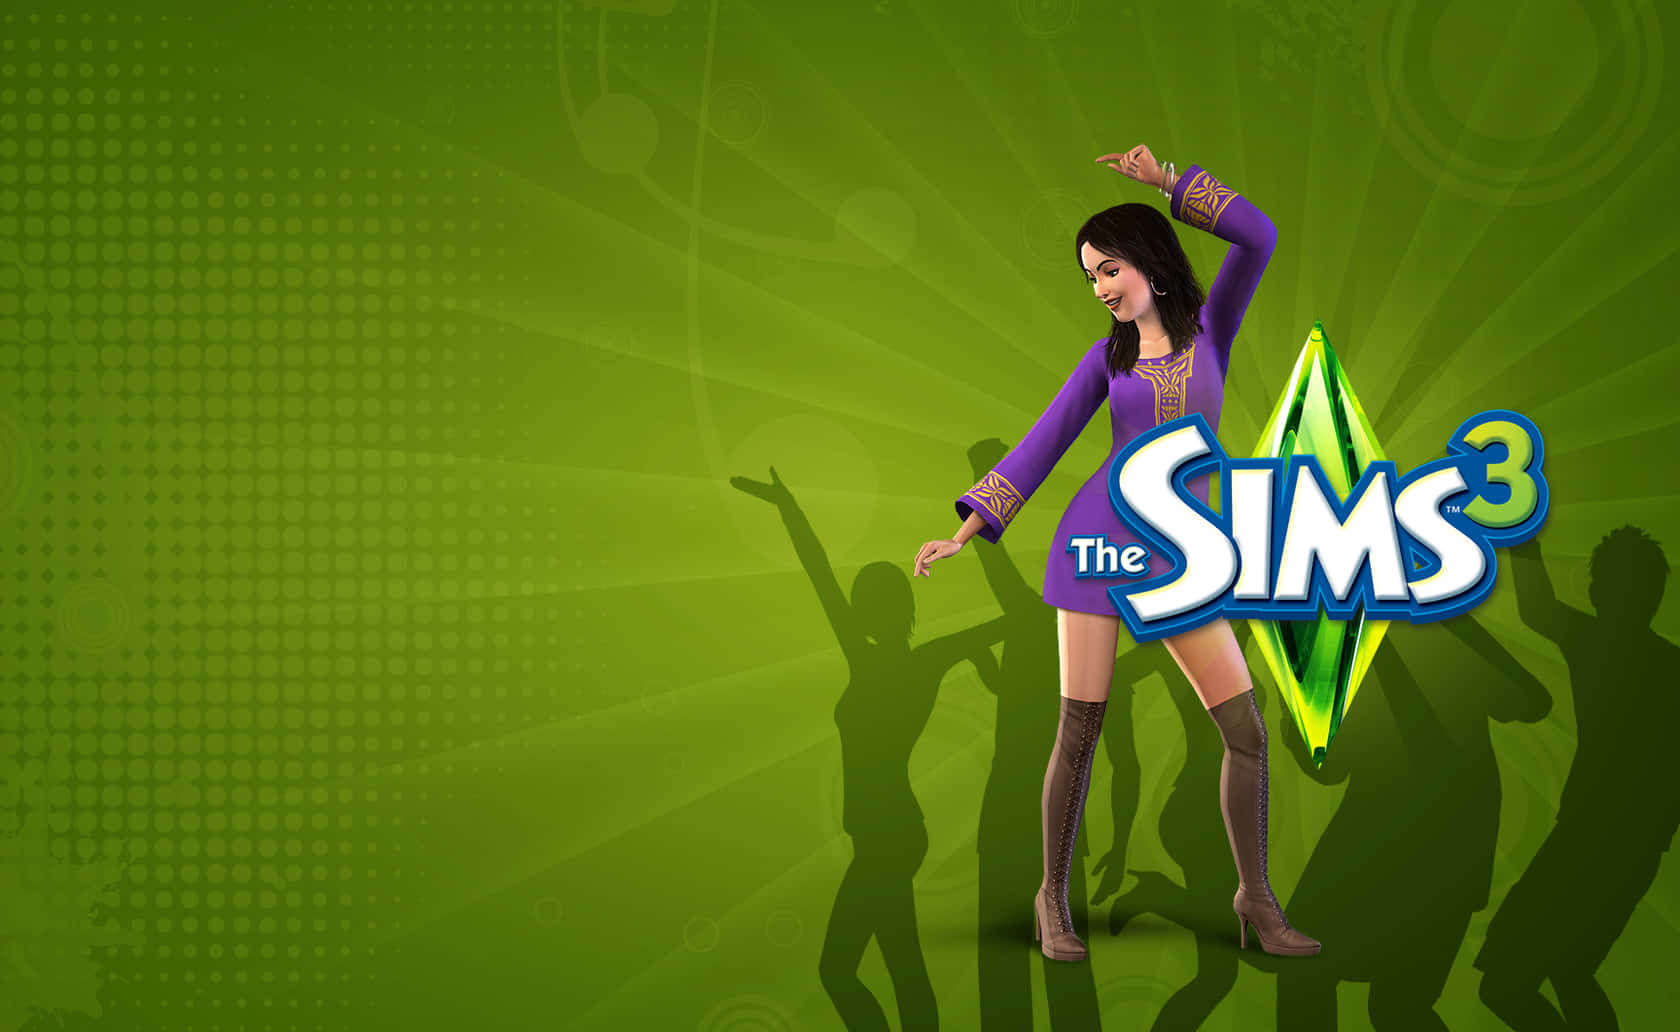 The Sims 3 Dancing Girl Wallpaper